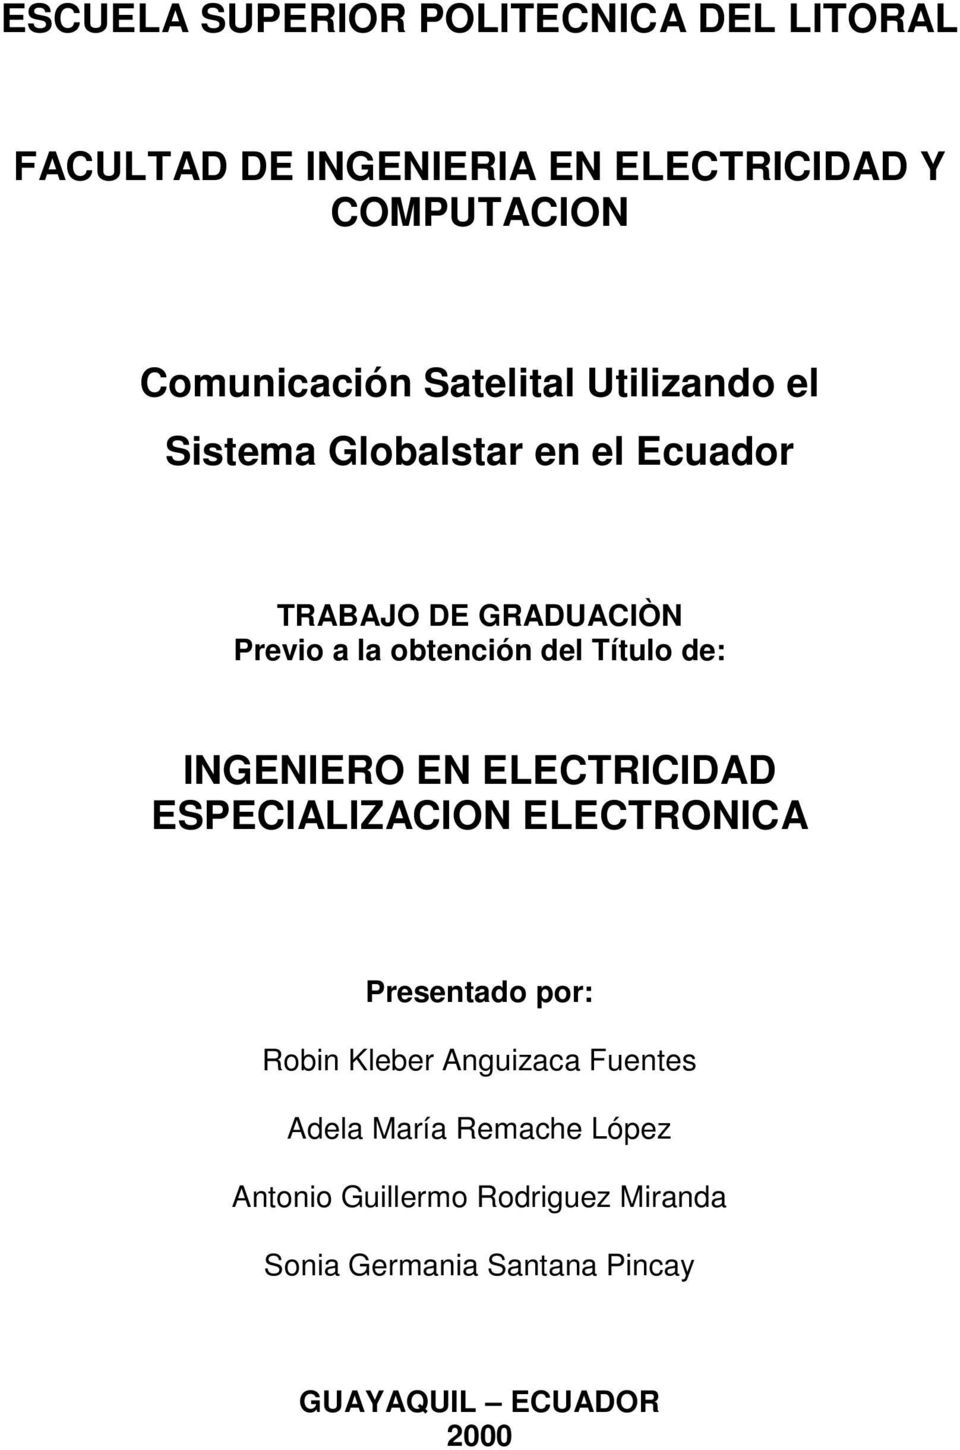 Título de: INGENIERO EN ELECTRICIDAD ESPECIALIZACION ELECTRONICA Presentado por: Robin Kleber Anguizaca